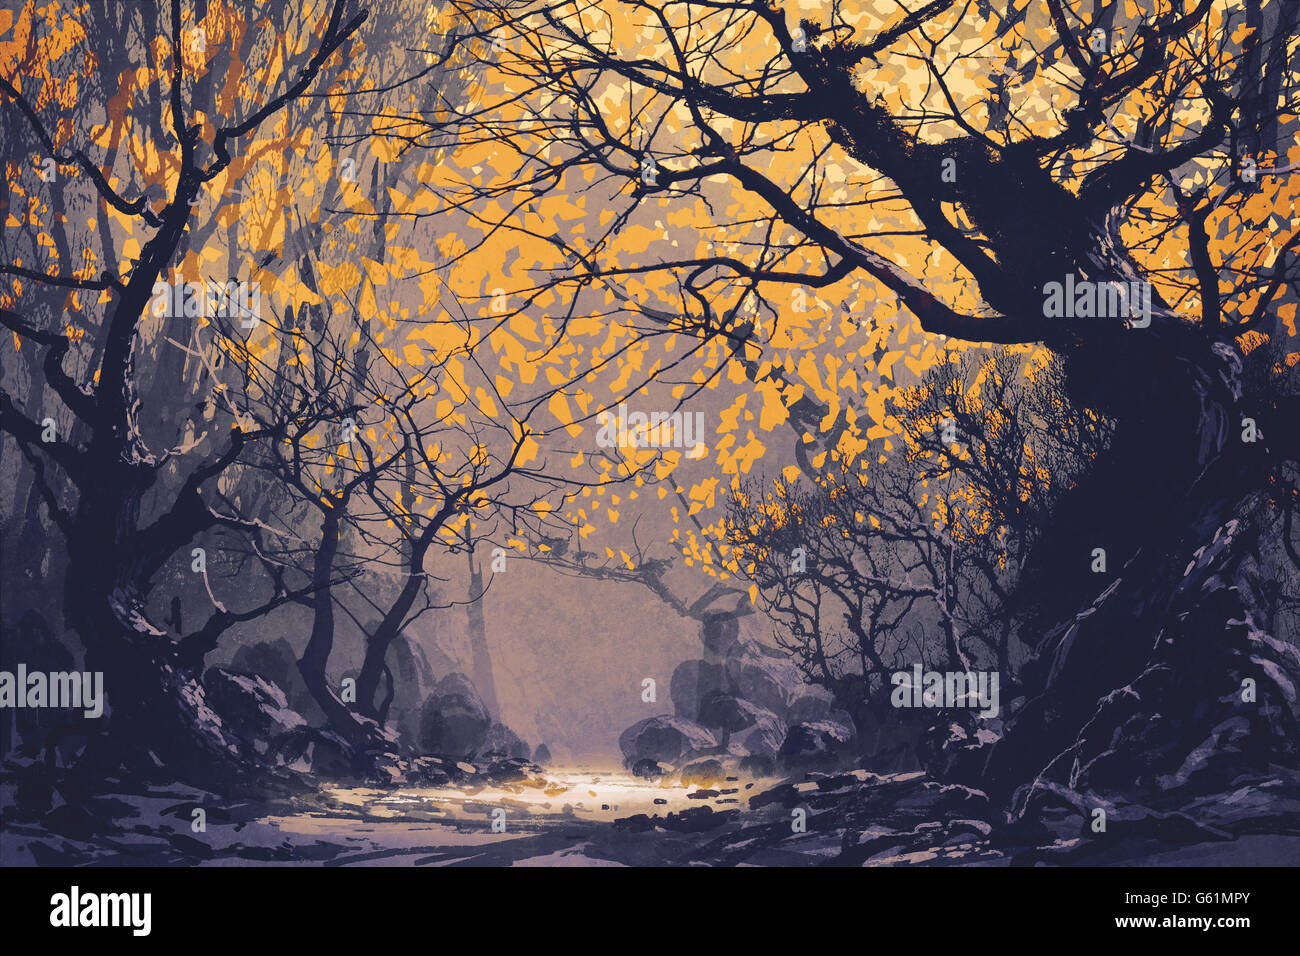 Scène de nuit de la peinture de paysage, forêt d'automne Banque D'Images